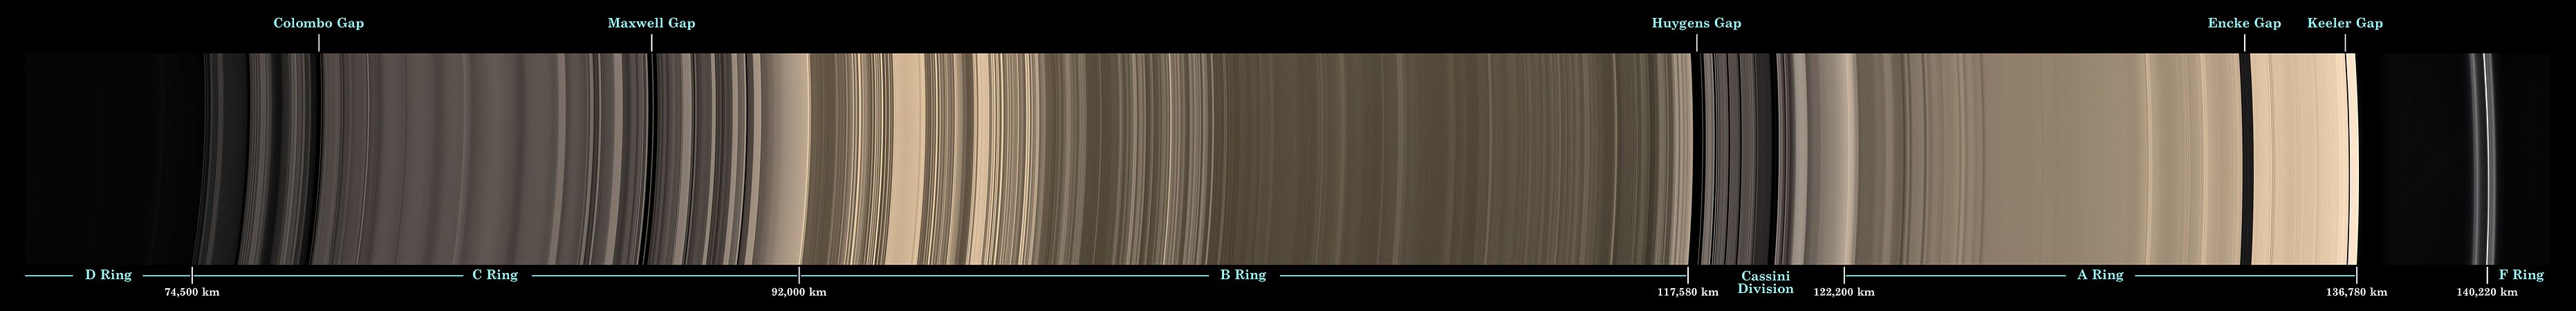 Rings of Saturn mosaic, by NASA/JPL/Space Science Institute